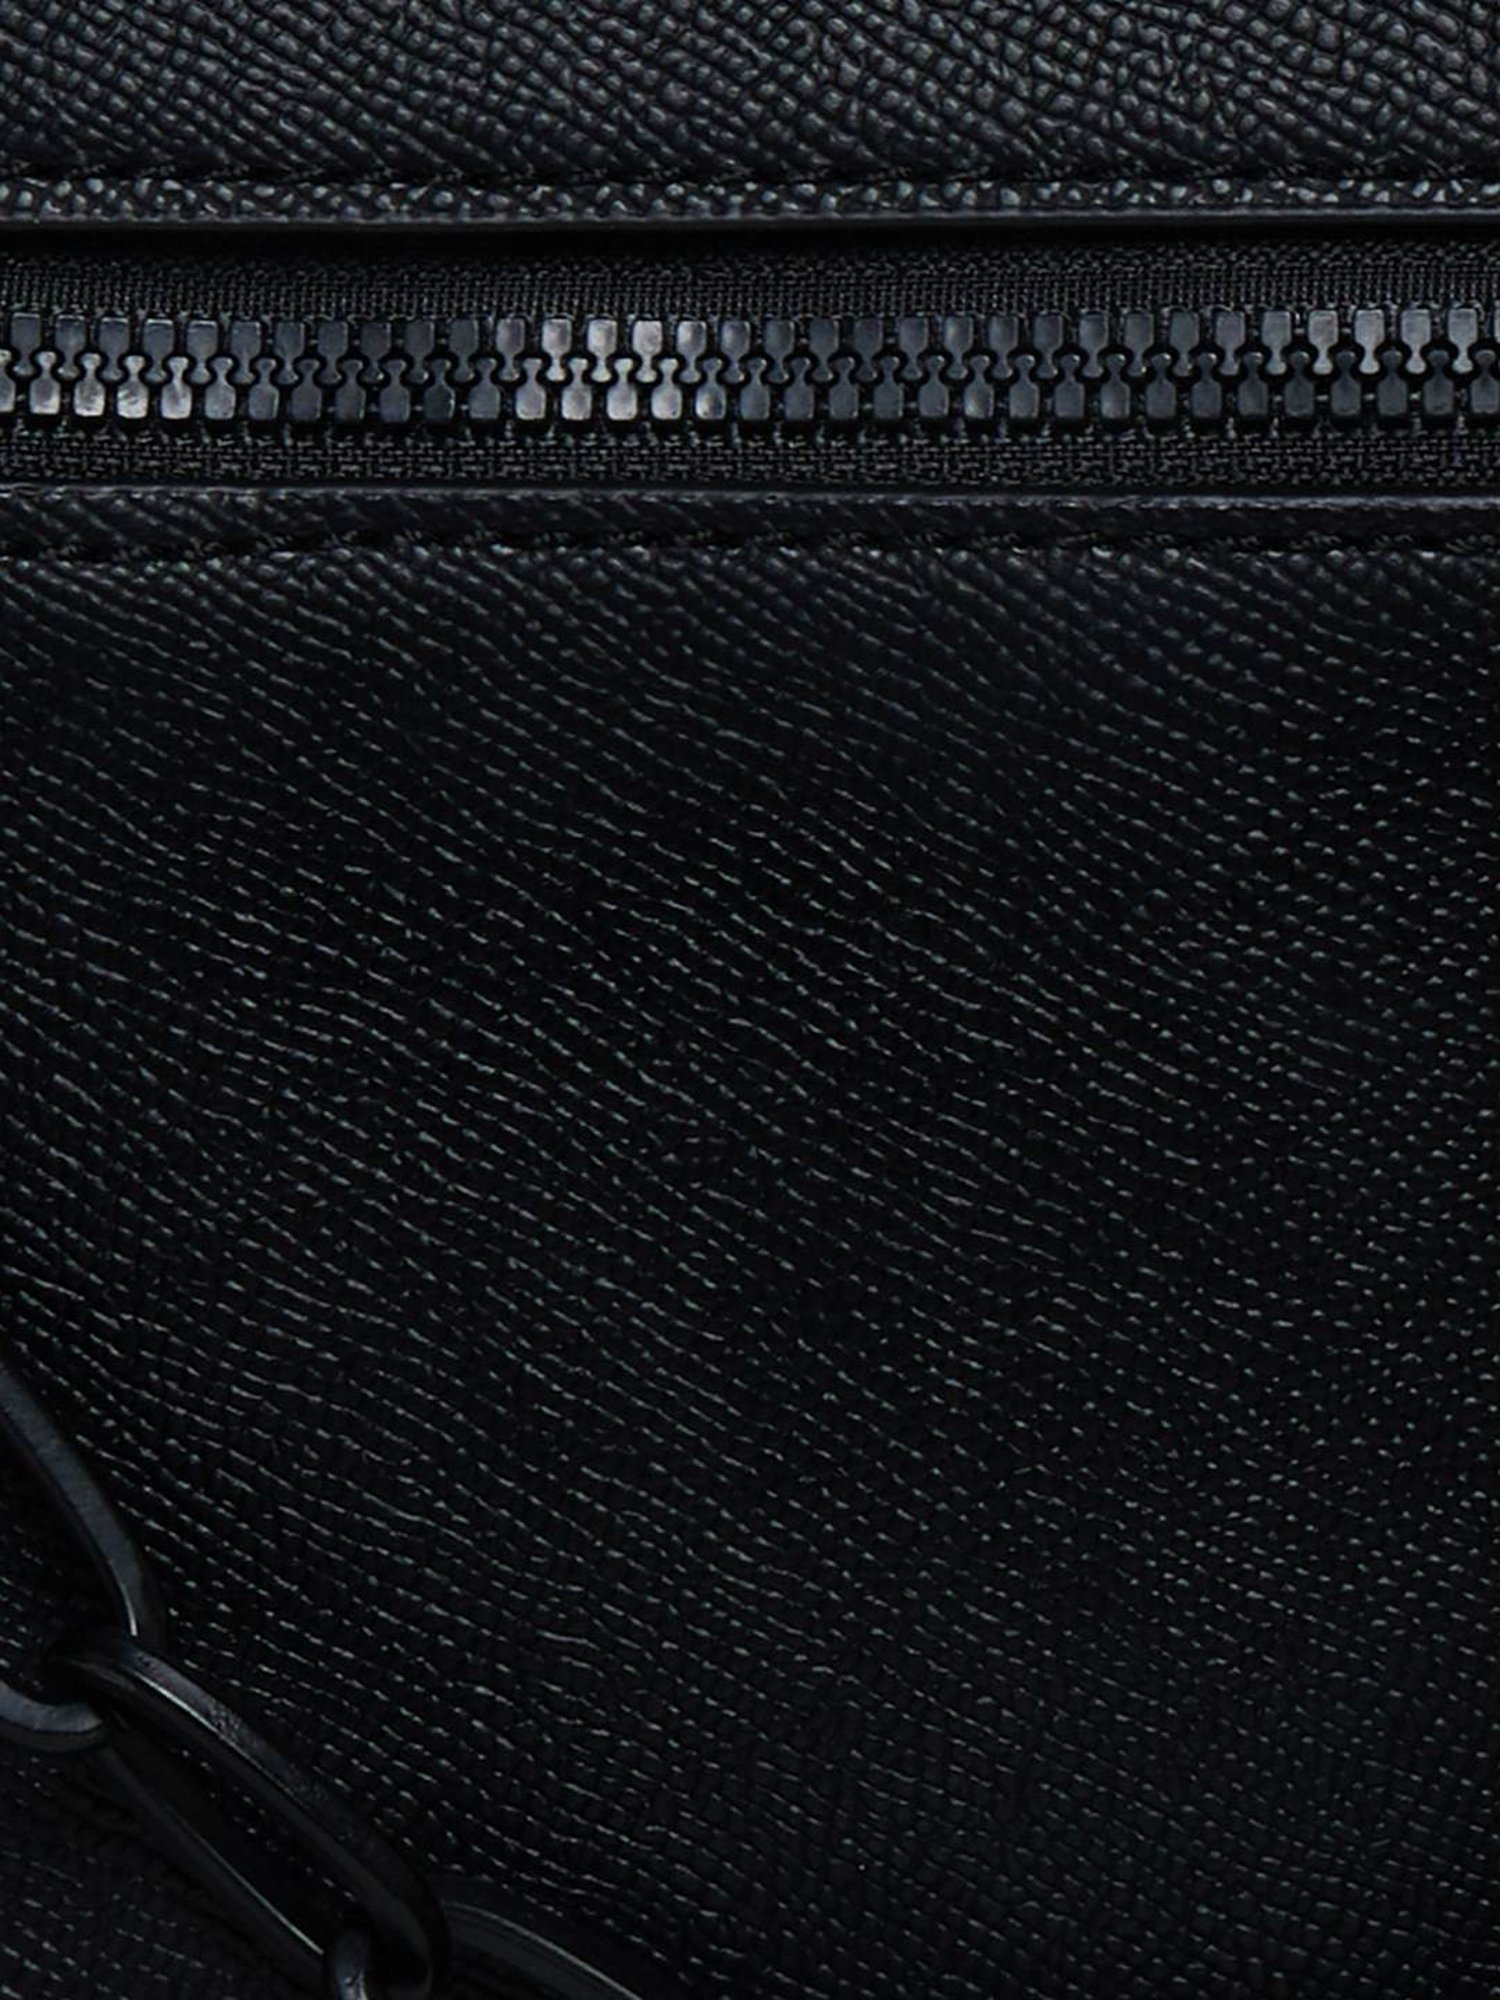 Buy Aldo Maverton008 Black Solid Medium Cross Body Bag Online At